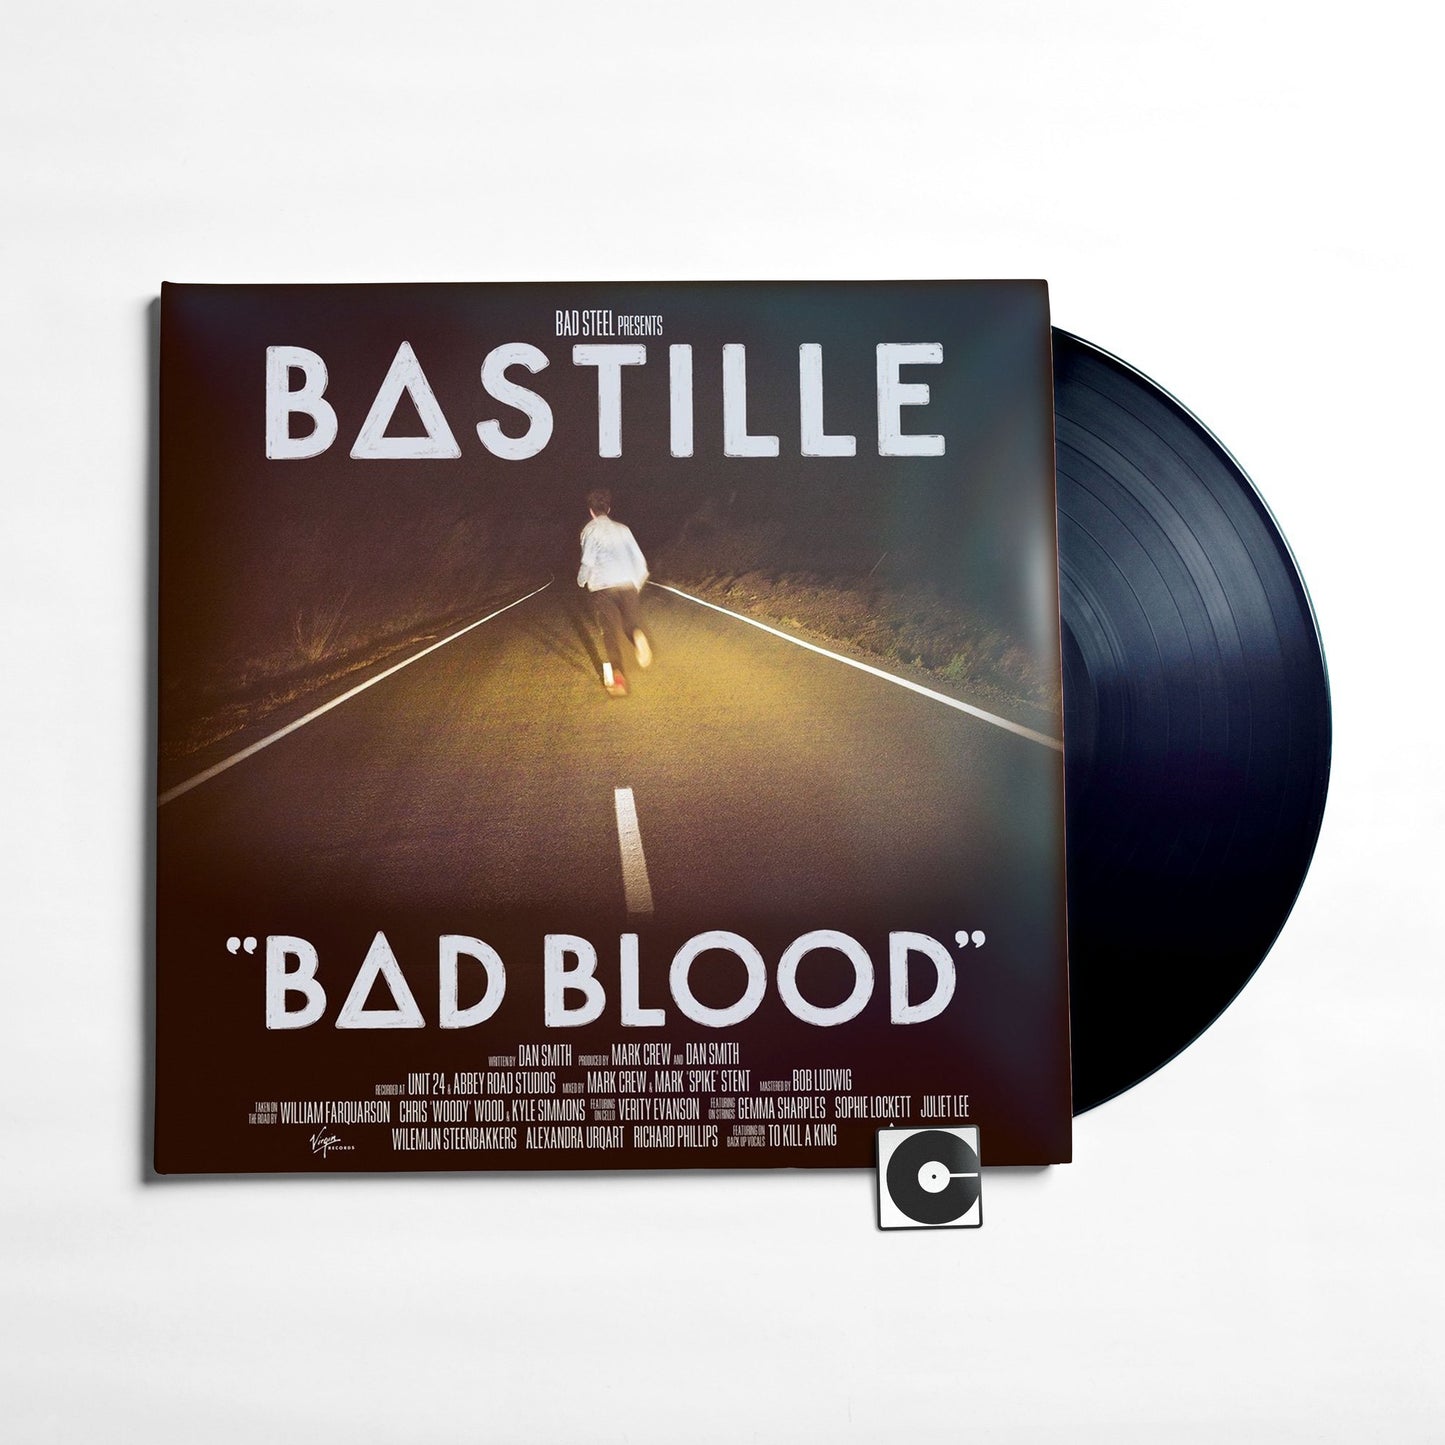 Bastille - "Bad Blood"